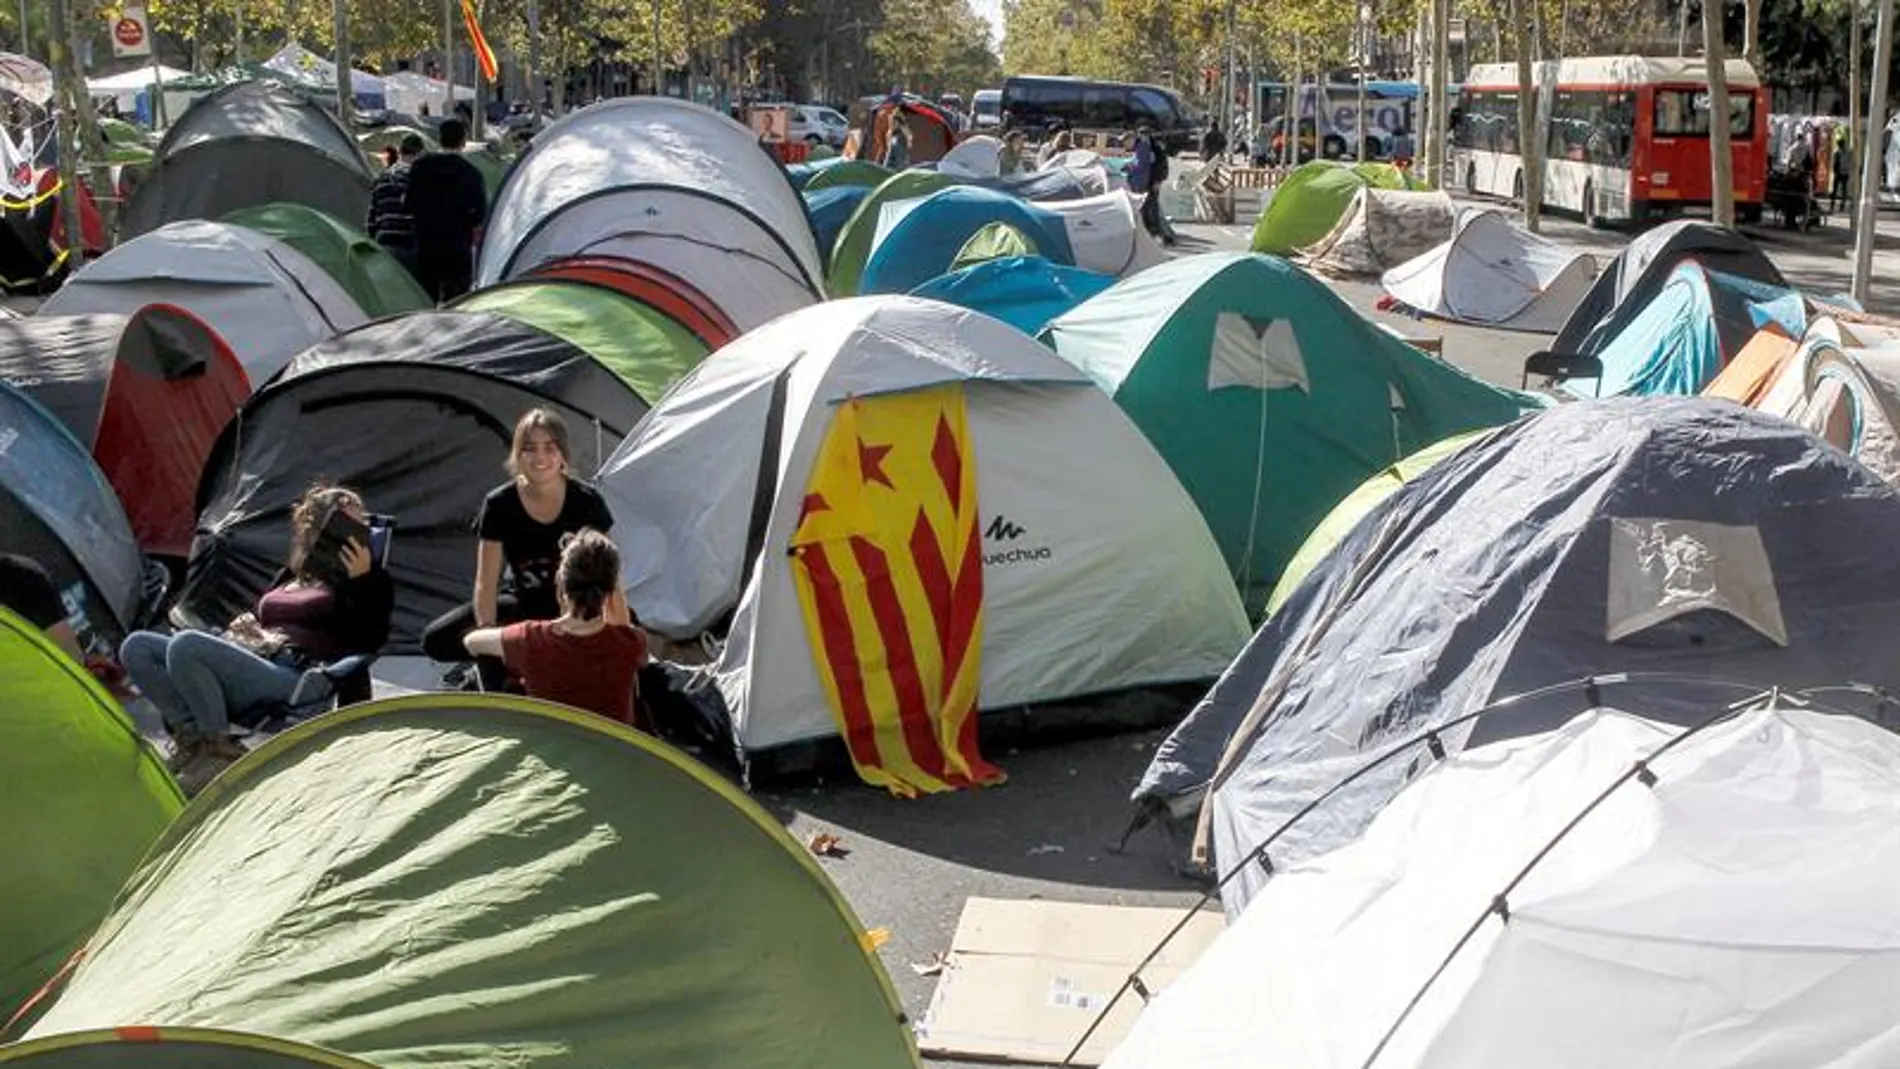 Estudiantes acampados en plaza Universidad de Barcelona